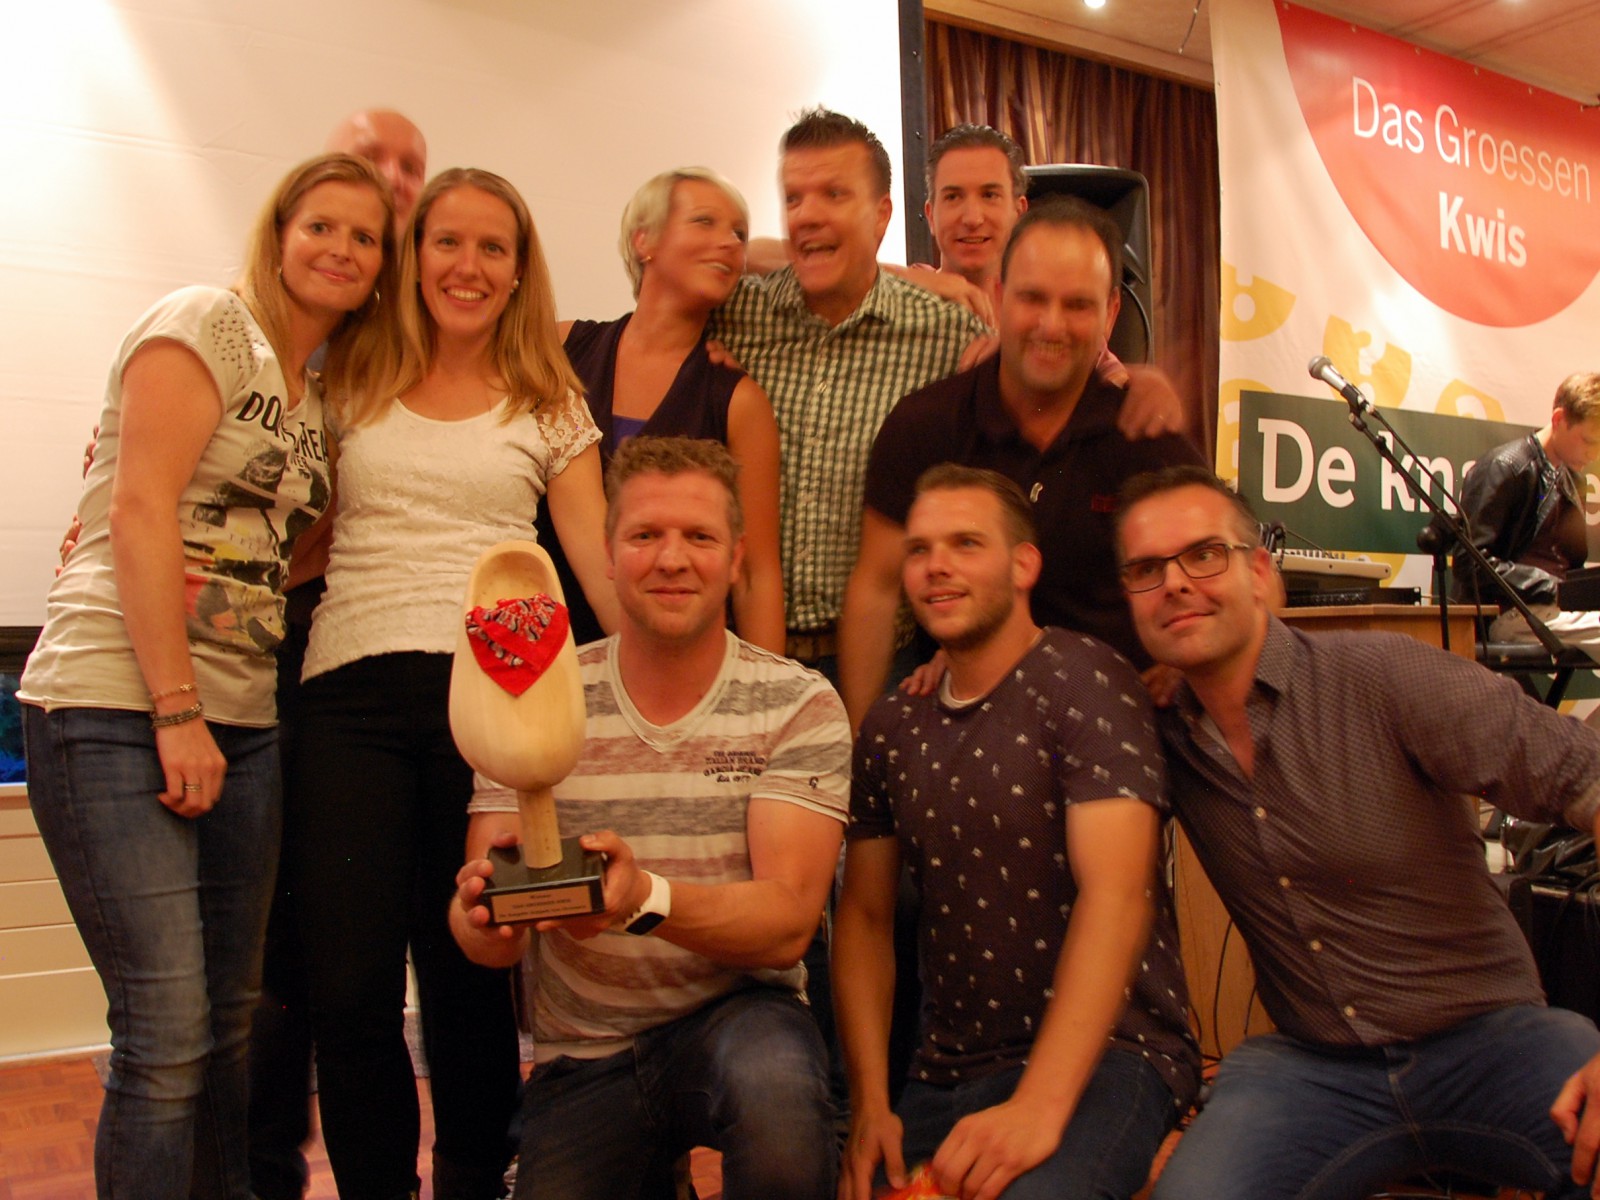 Kindercomité wint eerste editie Das Groessen Kwis